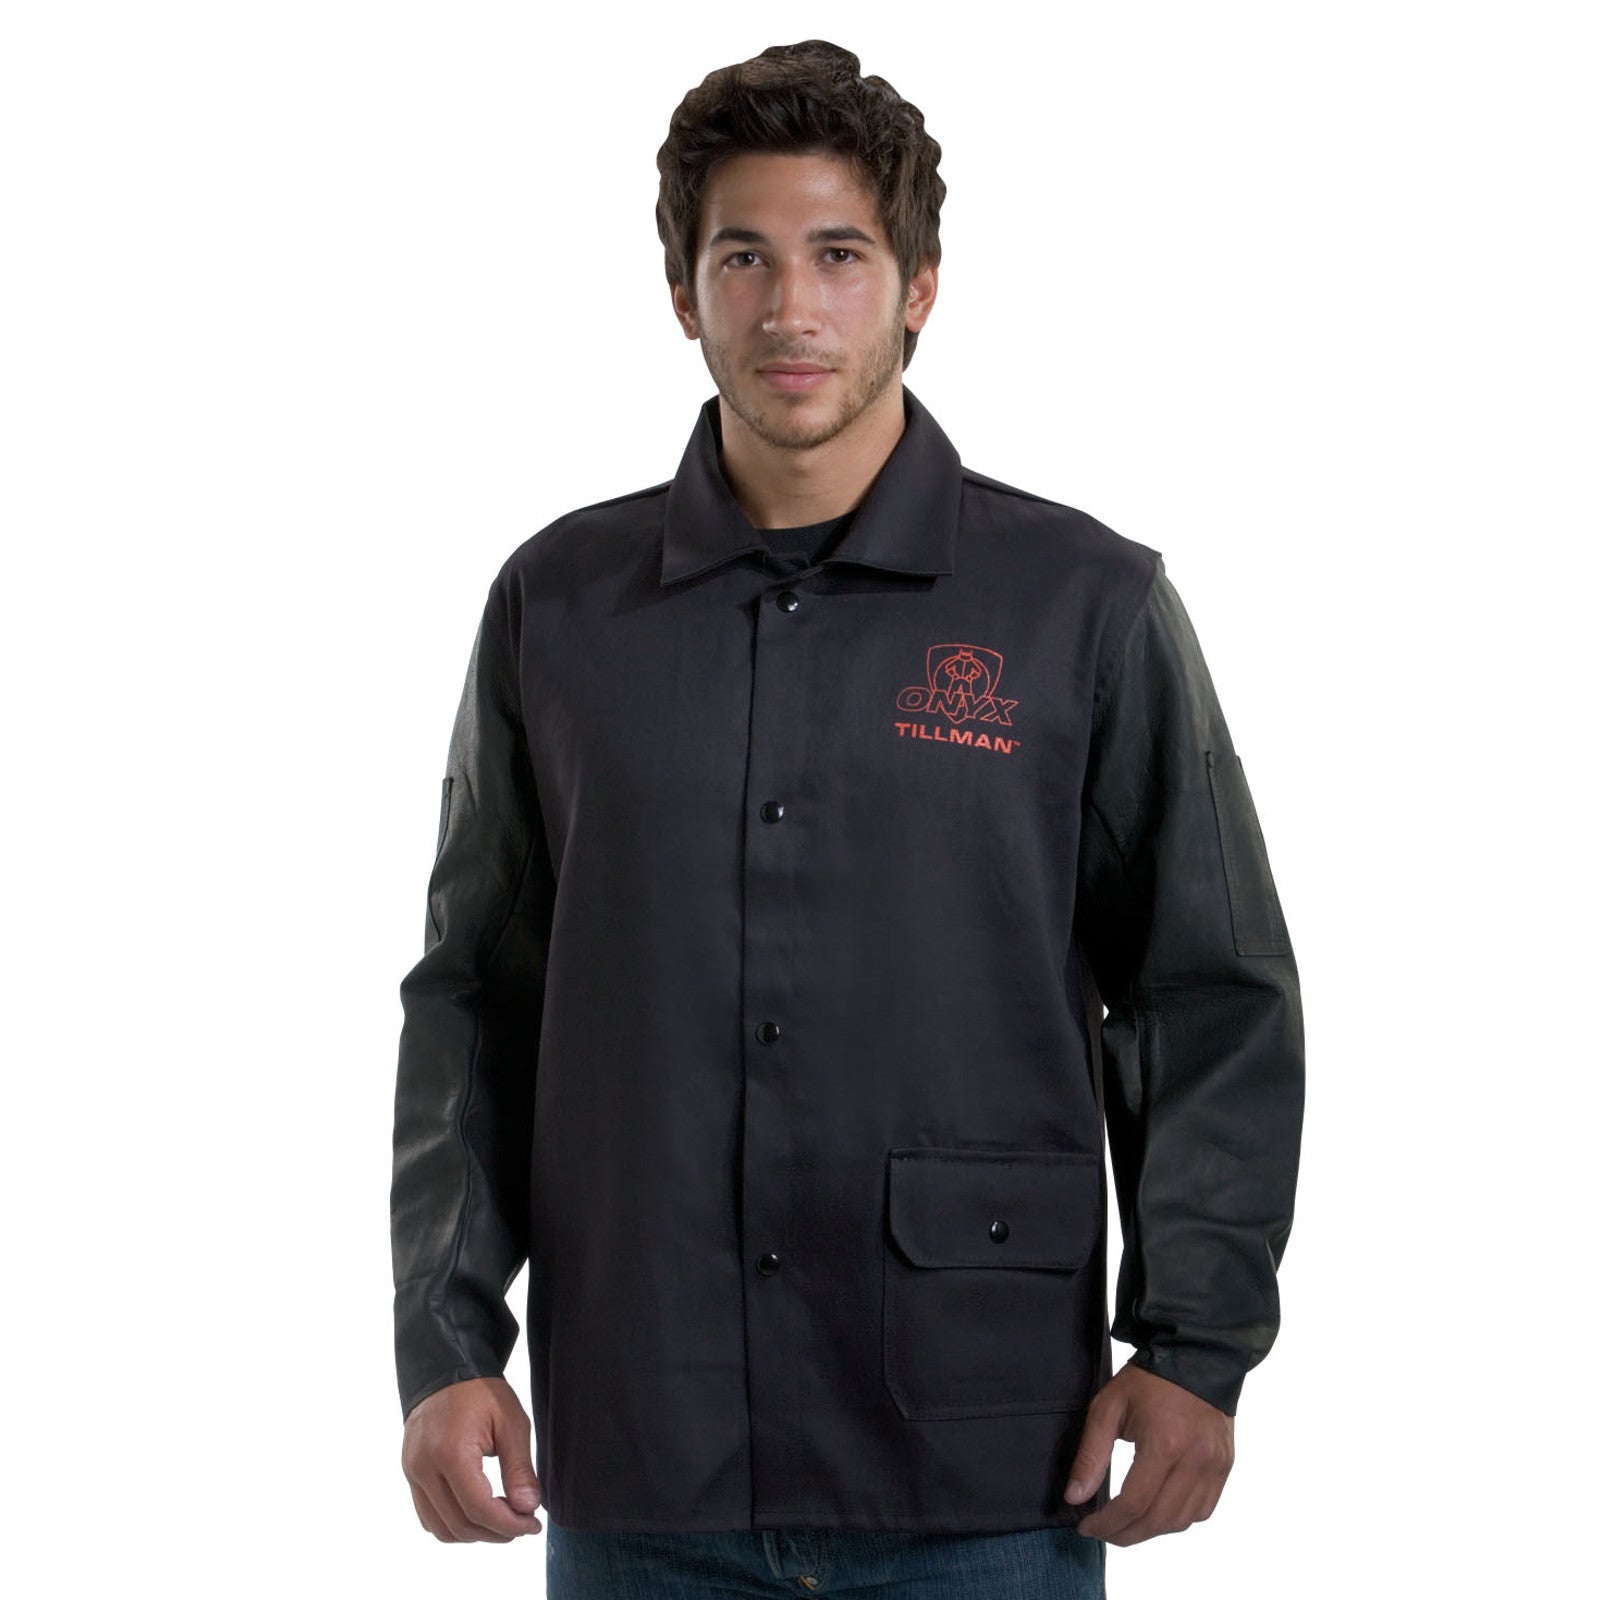 Tillman 9260 Black Onyx Medium Duty Leather/Flame Retardant Cotton Jacket